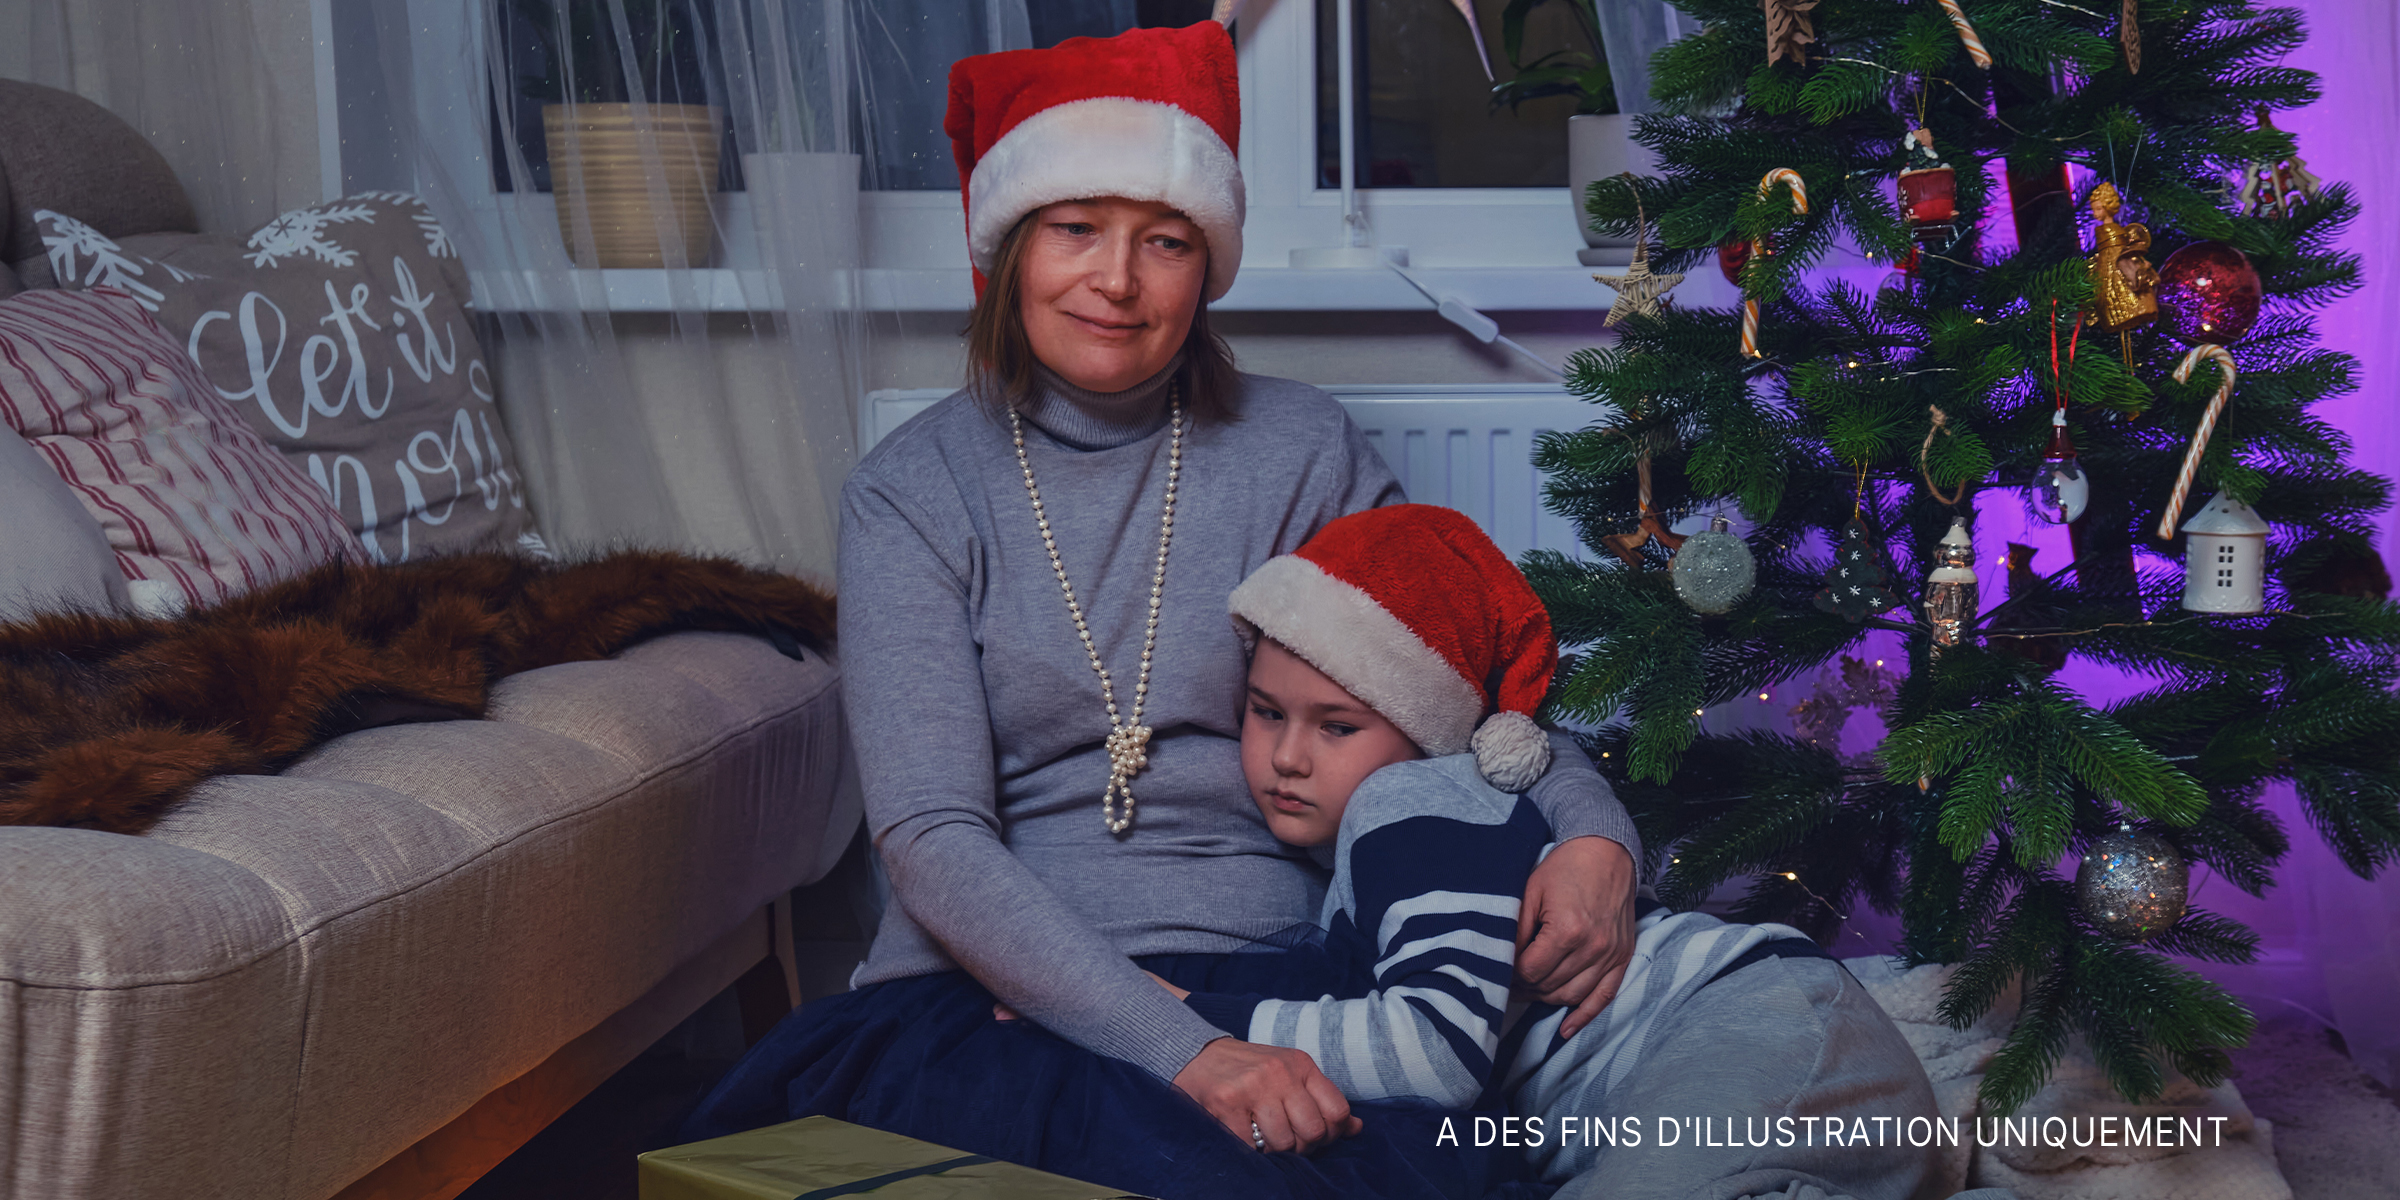 Mère et fils tristes assis près du sapin de Noël | Source : Getty Images